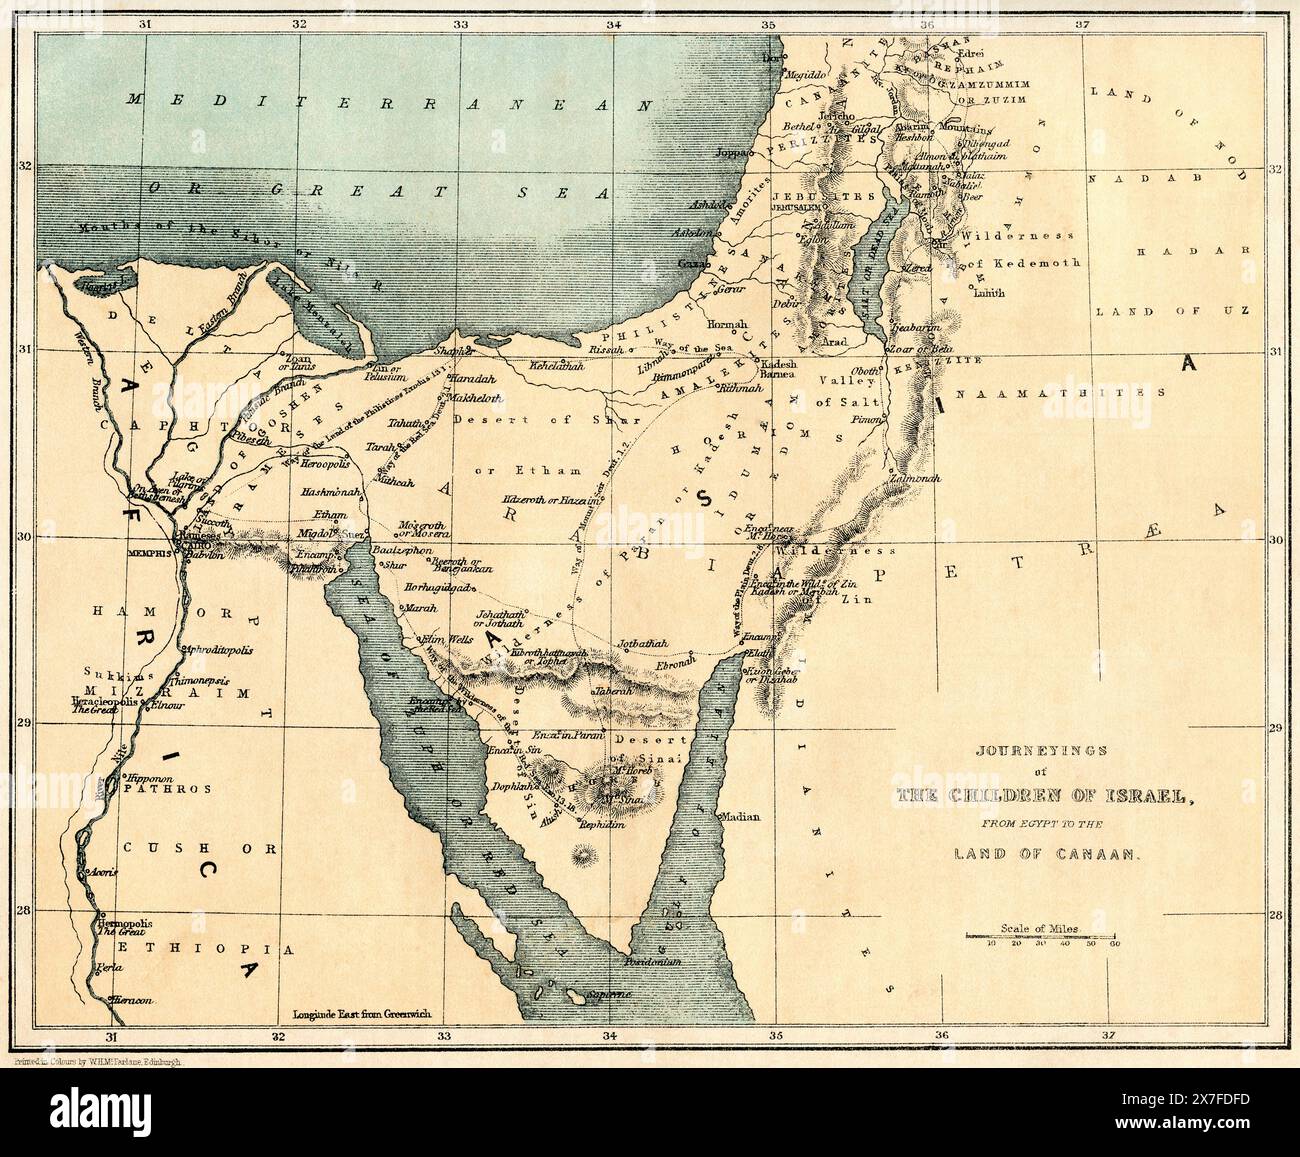 Carte du XIXe siècle montrant les Journeyings des enfants d'Israël de l'Egypte au pays de Canaan. Banque D'Images